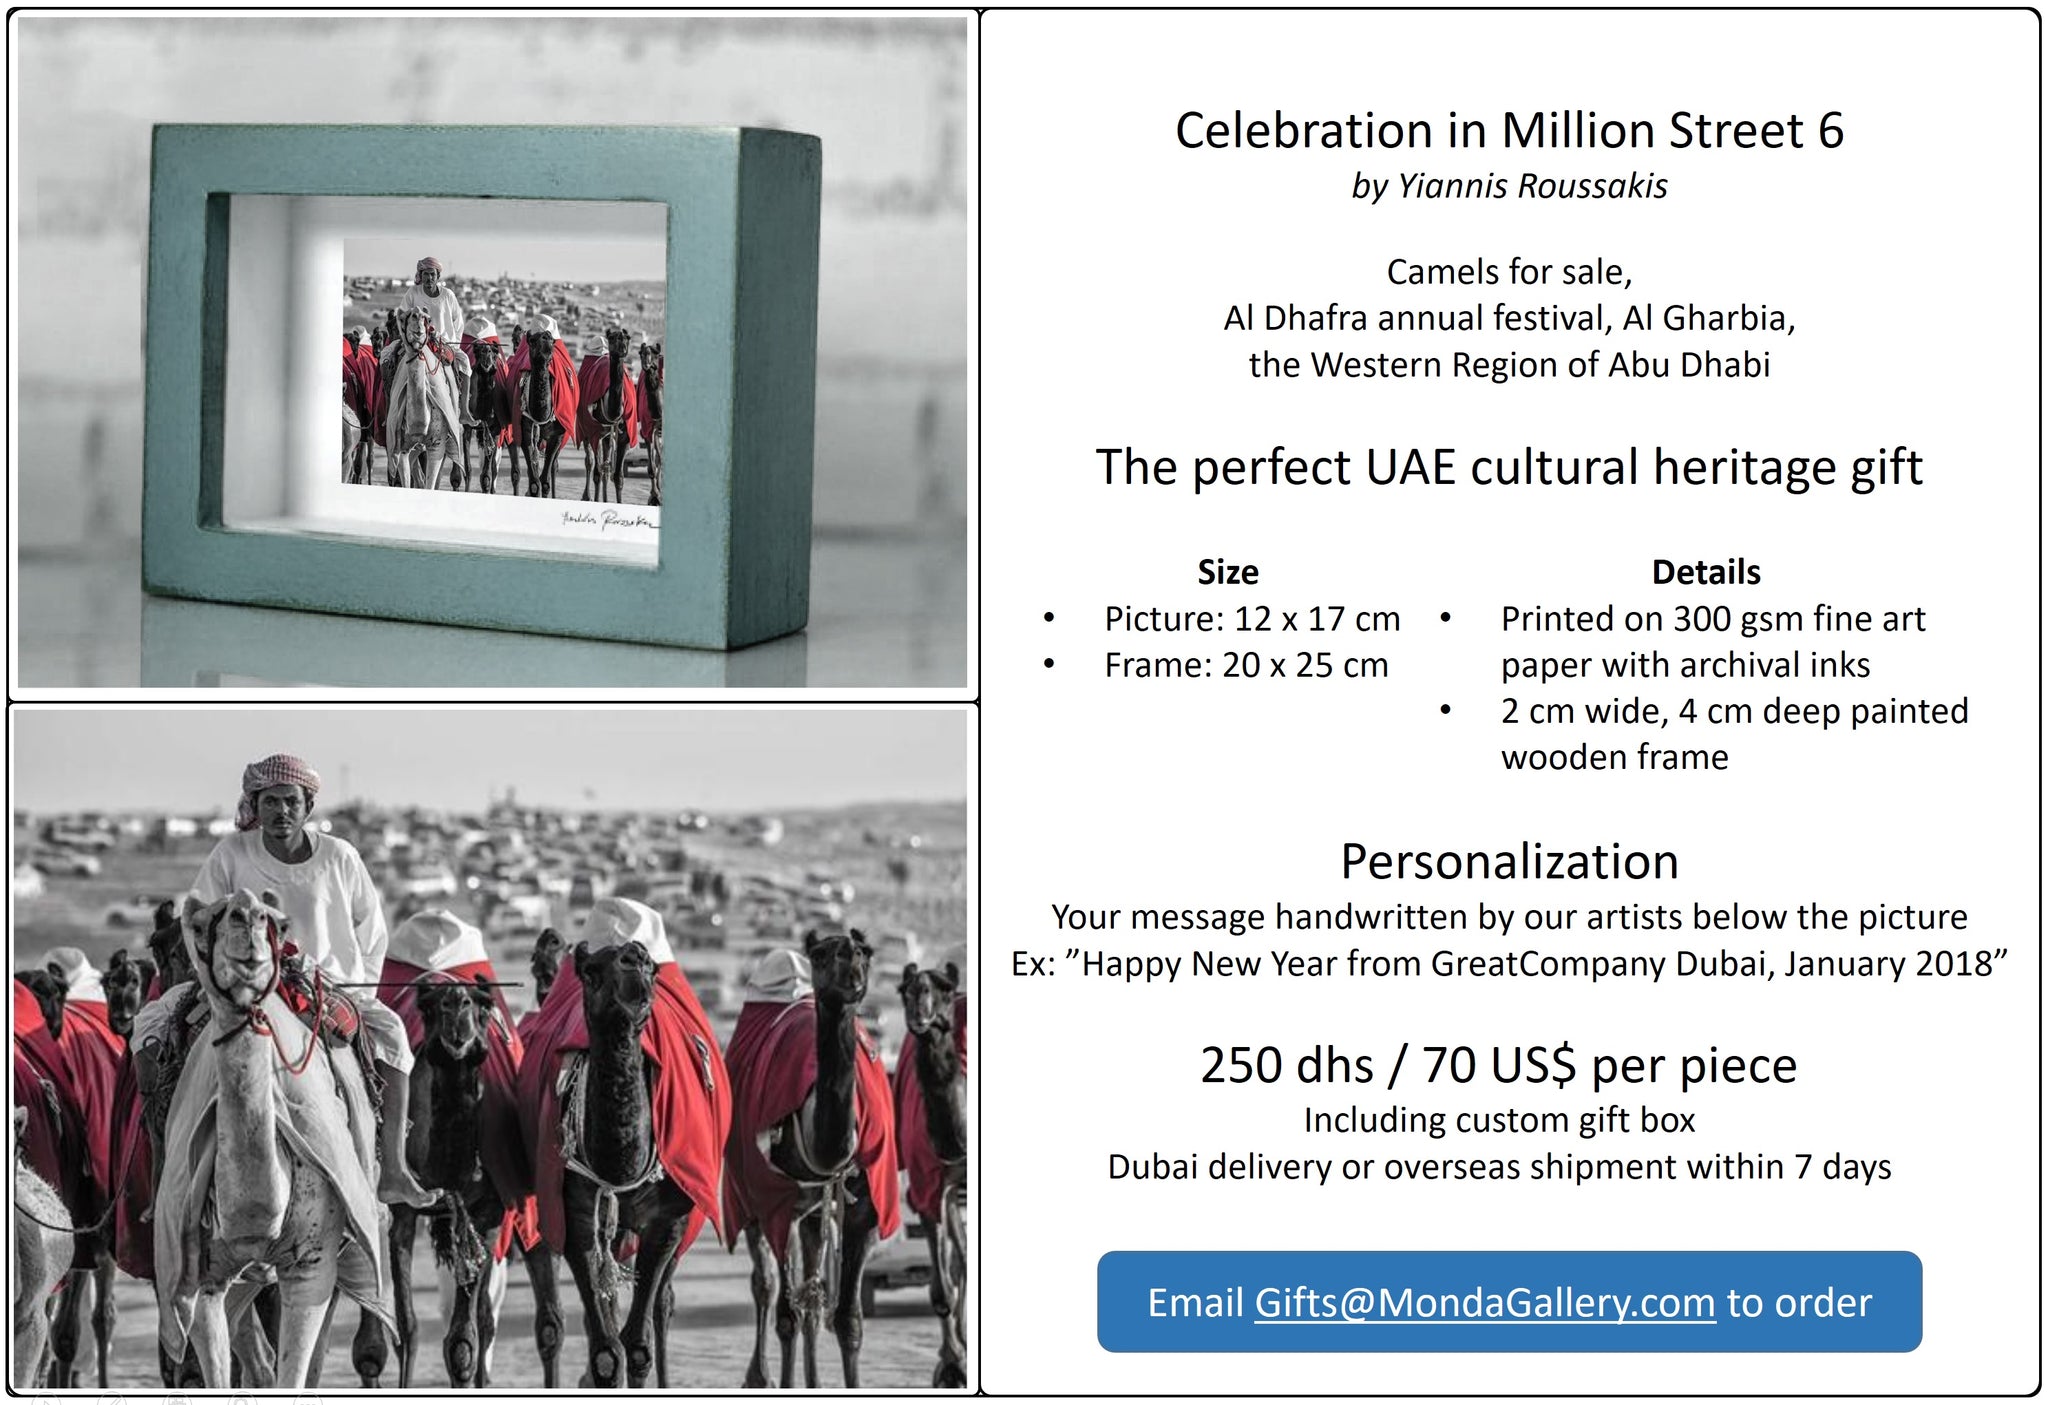 Celebration in Million Street 6 - Corporate Framed Art Gift